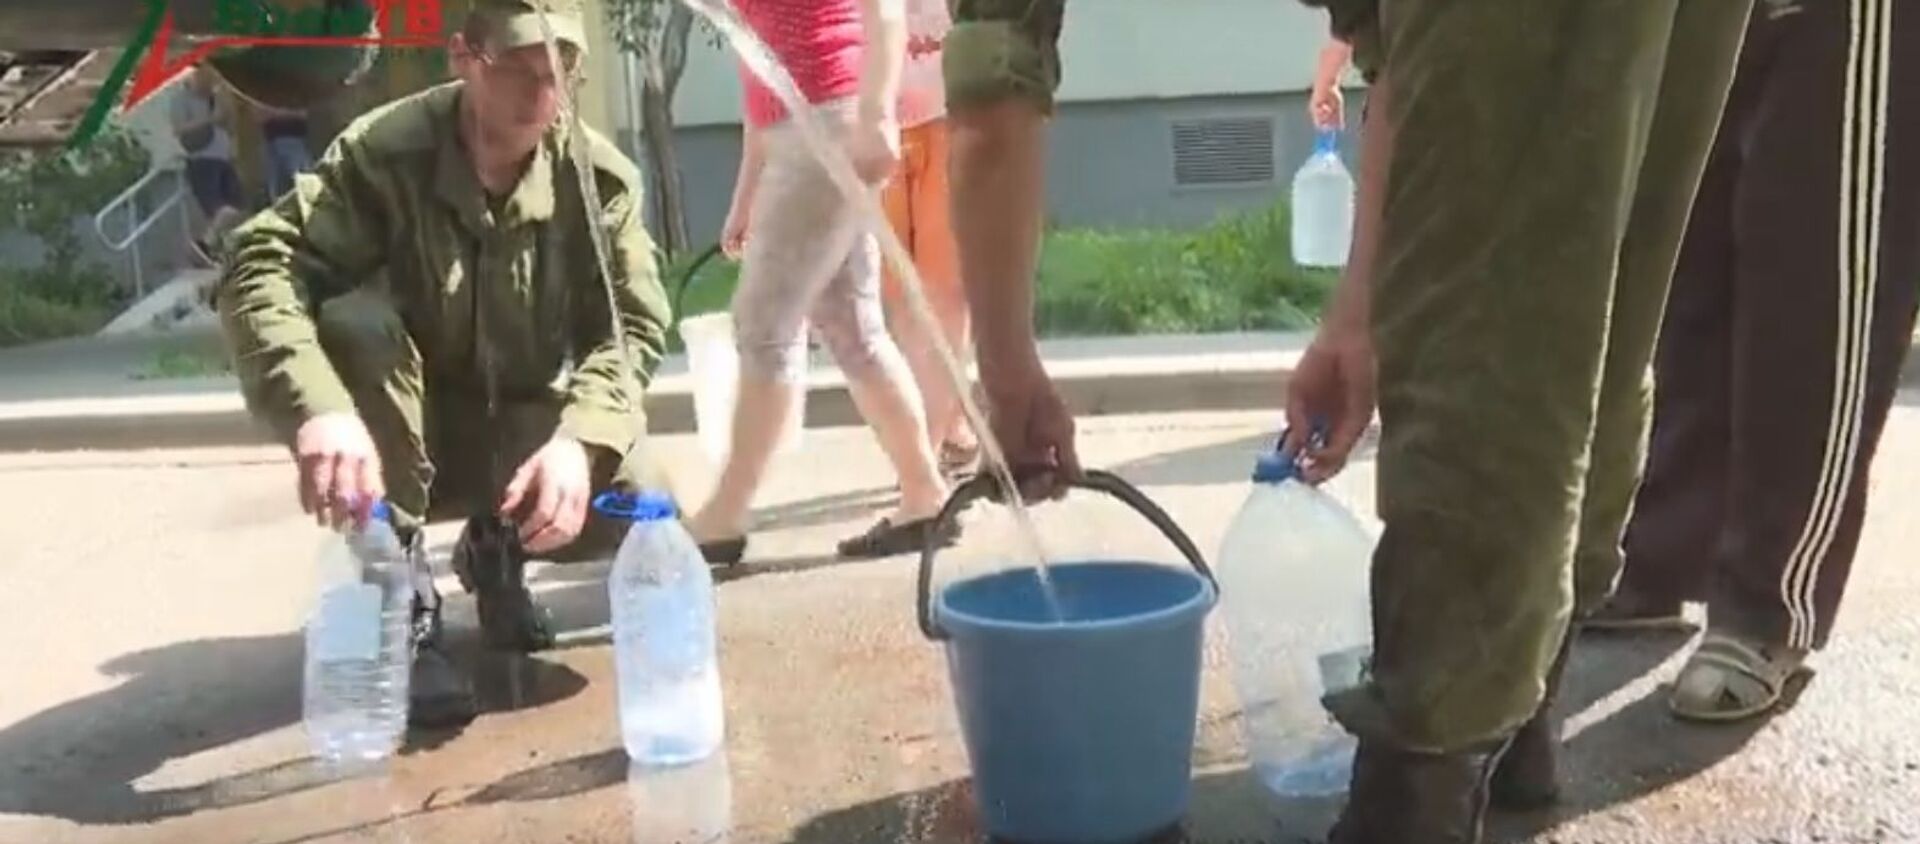 Военные подключились к подвозу питьевой воды в Минск - видео - Sputnik Беларусь, 1920, 26.06.2020